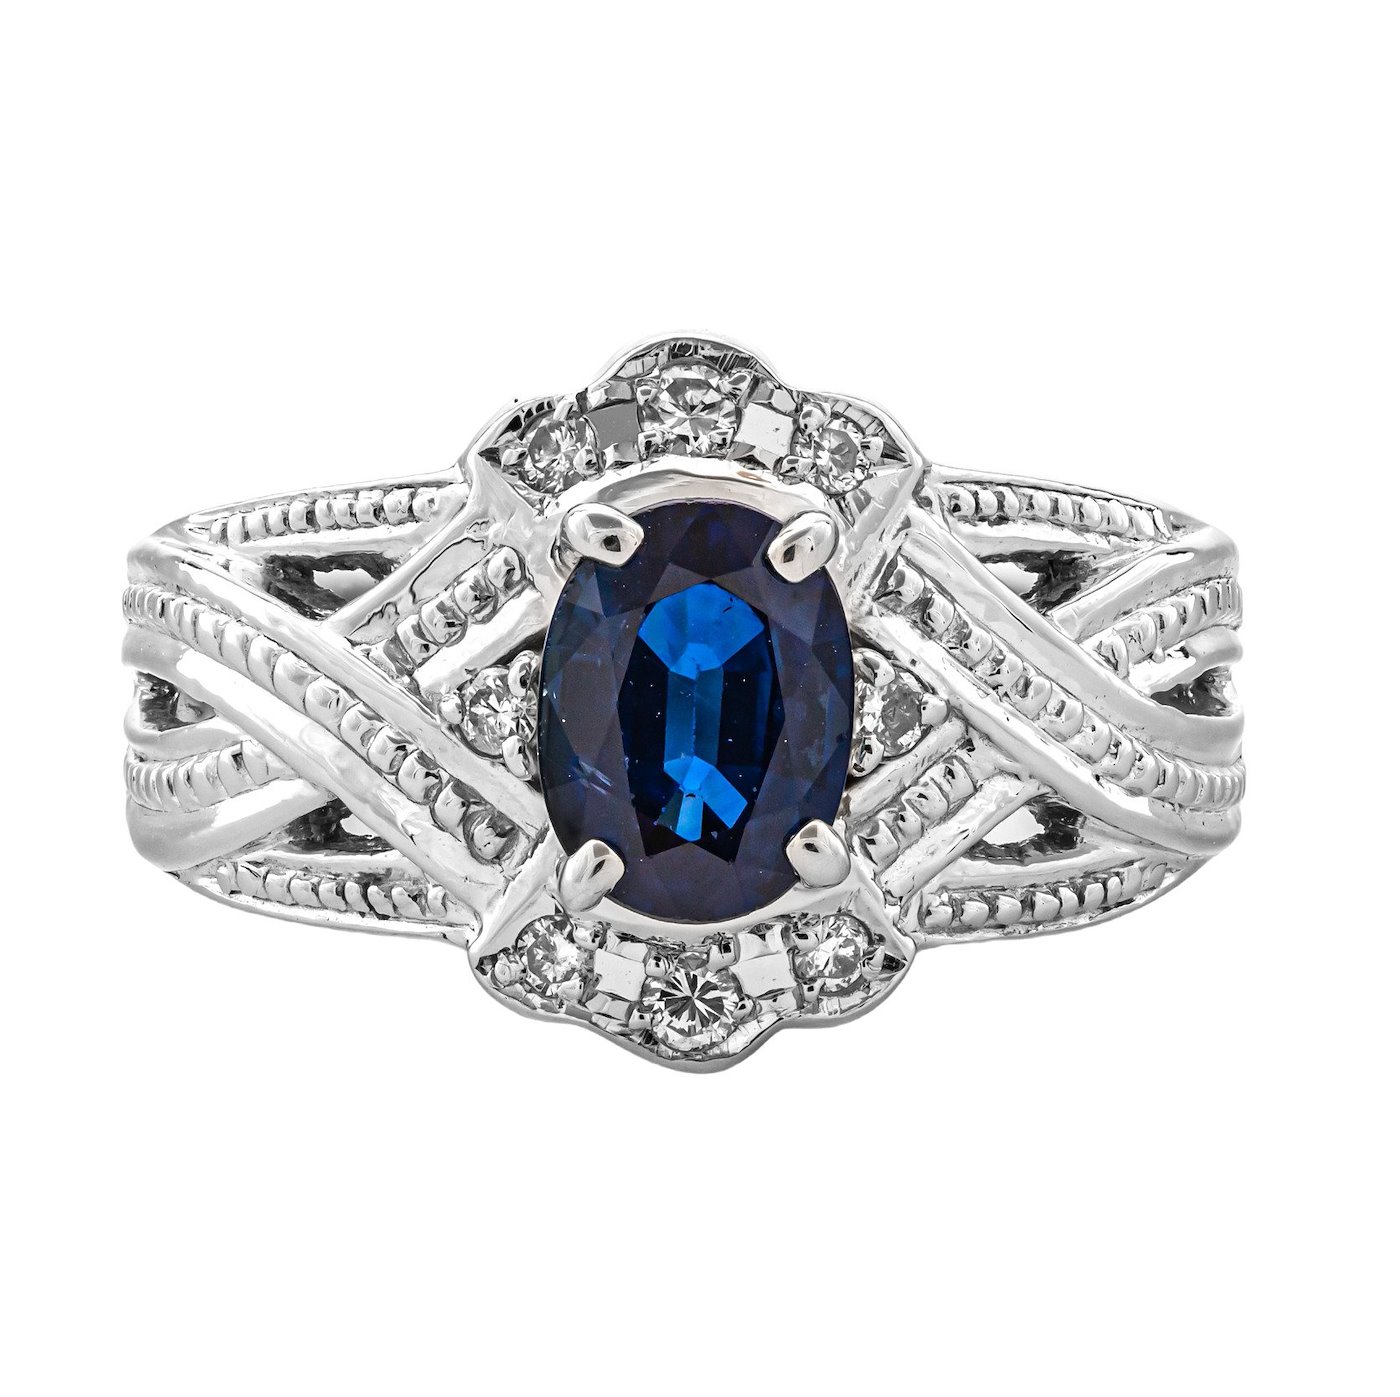 .. - Luxusní prsten s 1,20 ct safírem, 0,12 ct diamanty, platina 900/1000, značeno platnou puncovní značkou "koruna", , hrubá hmotnost 8,024 g